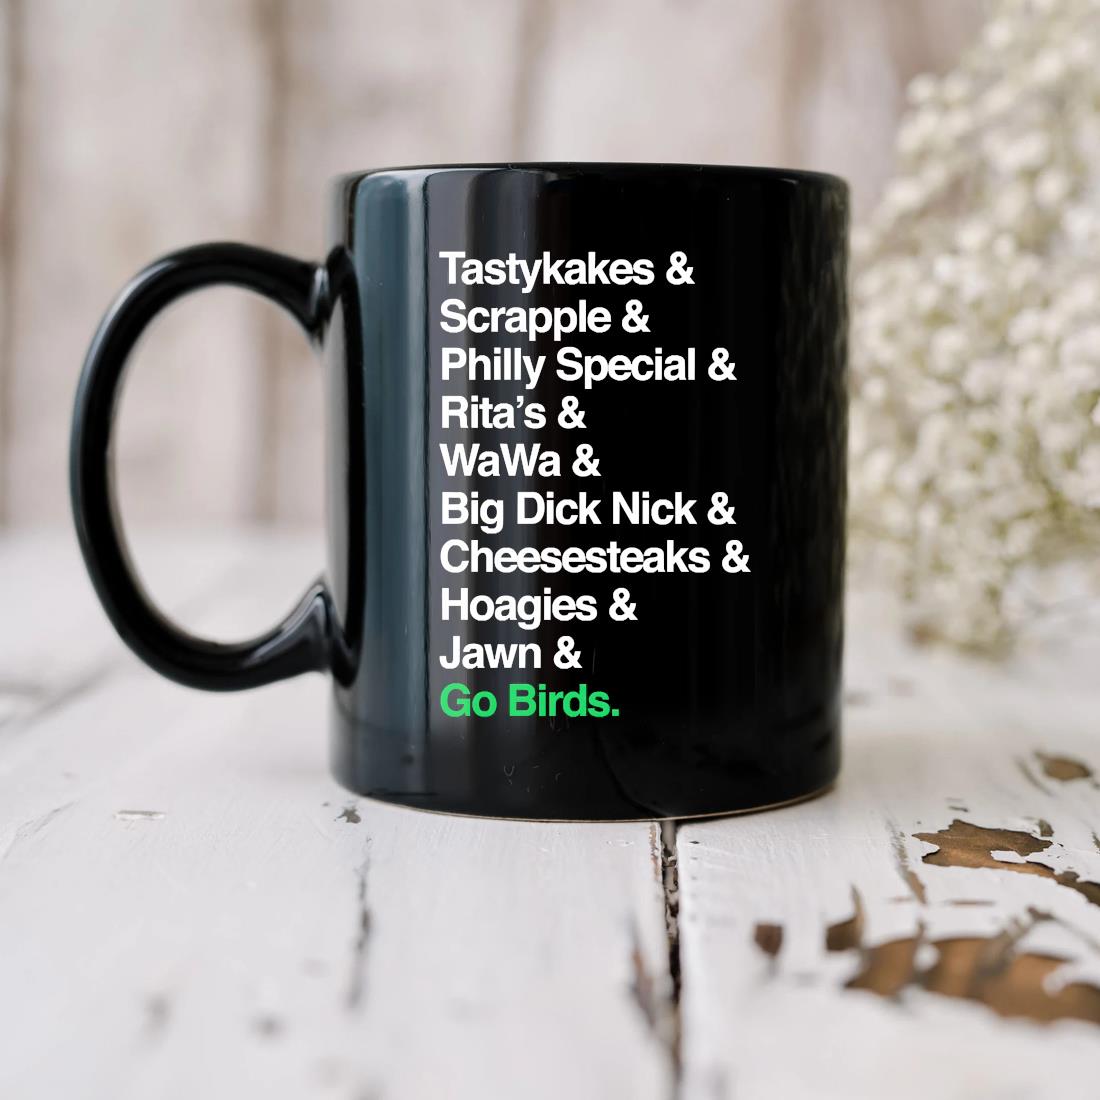 Tastykakes & Sceapple & Philly Special & Rita's & Wawa & Big Dick Nick & Cheesesteaks & Hoagies & Jawn & Go Birds Mug